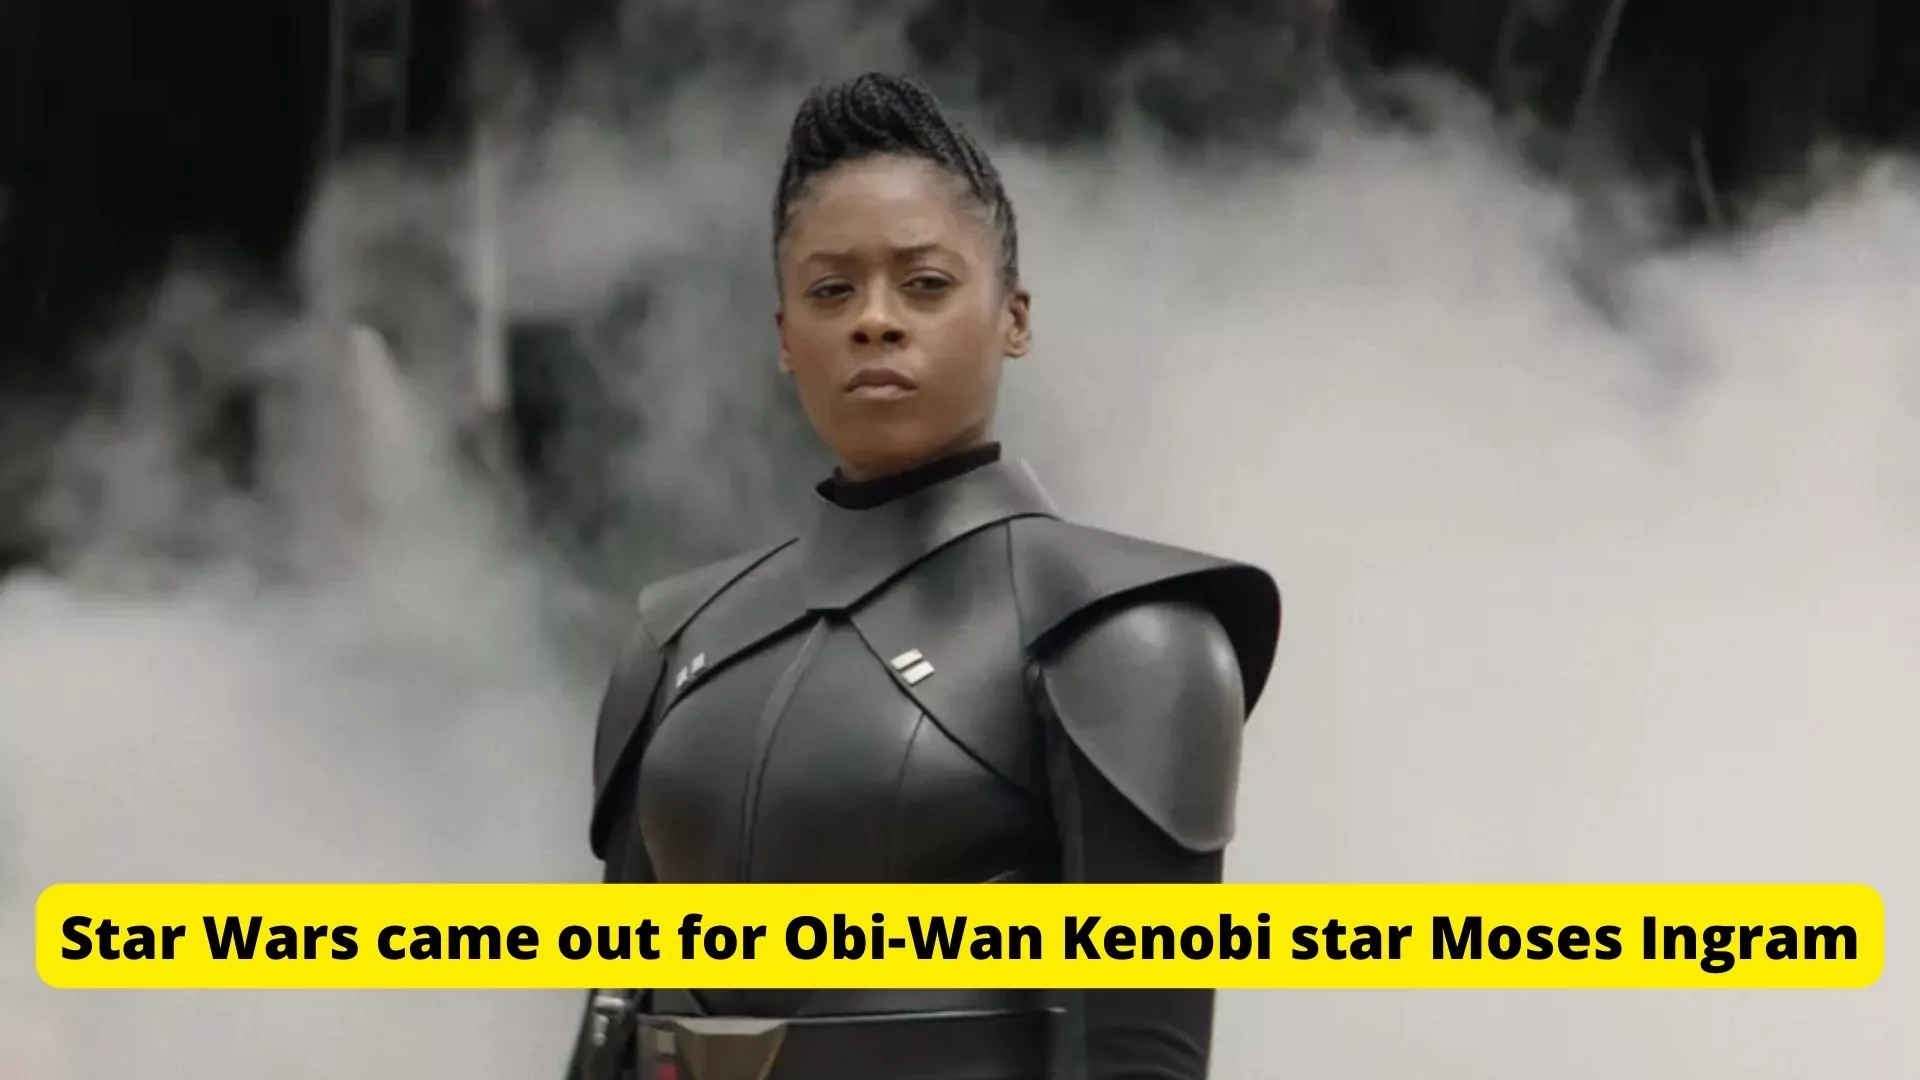 Star Wars came out for Obi-Wan Kenobi star Moses Ingram